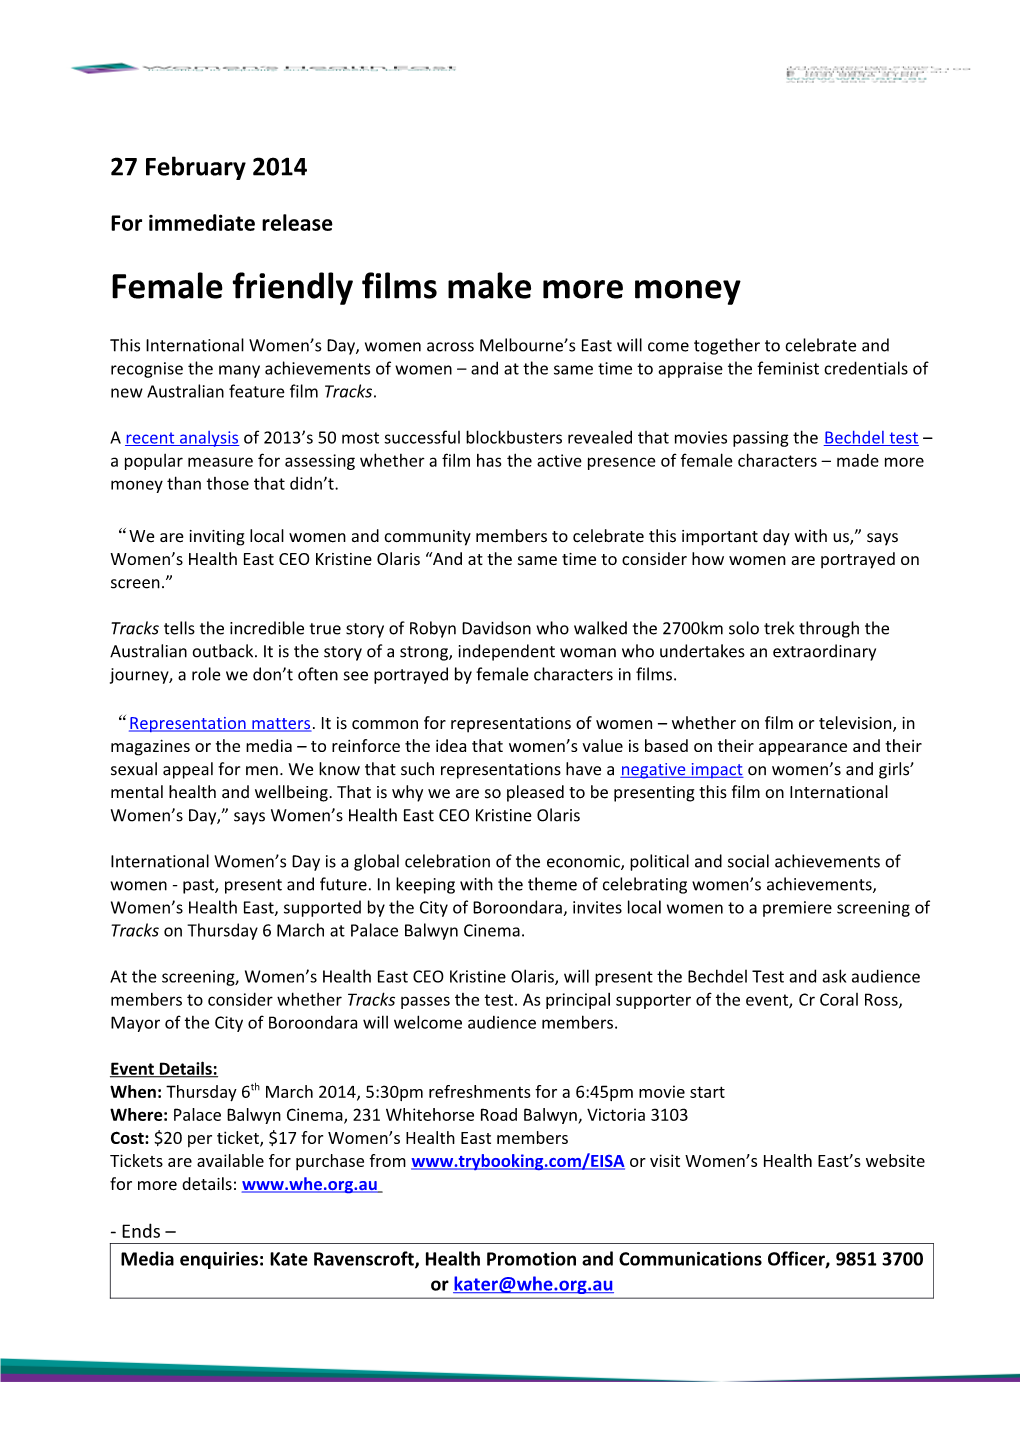 Female Friendly Films Make More Money